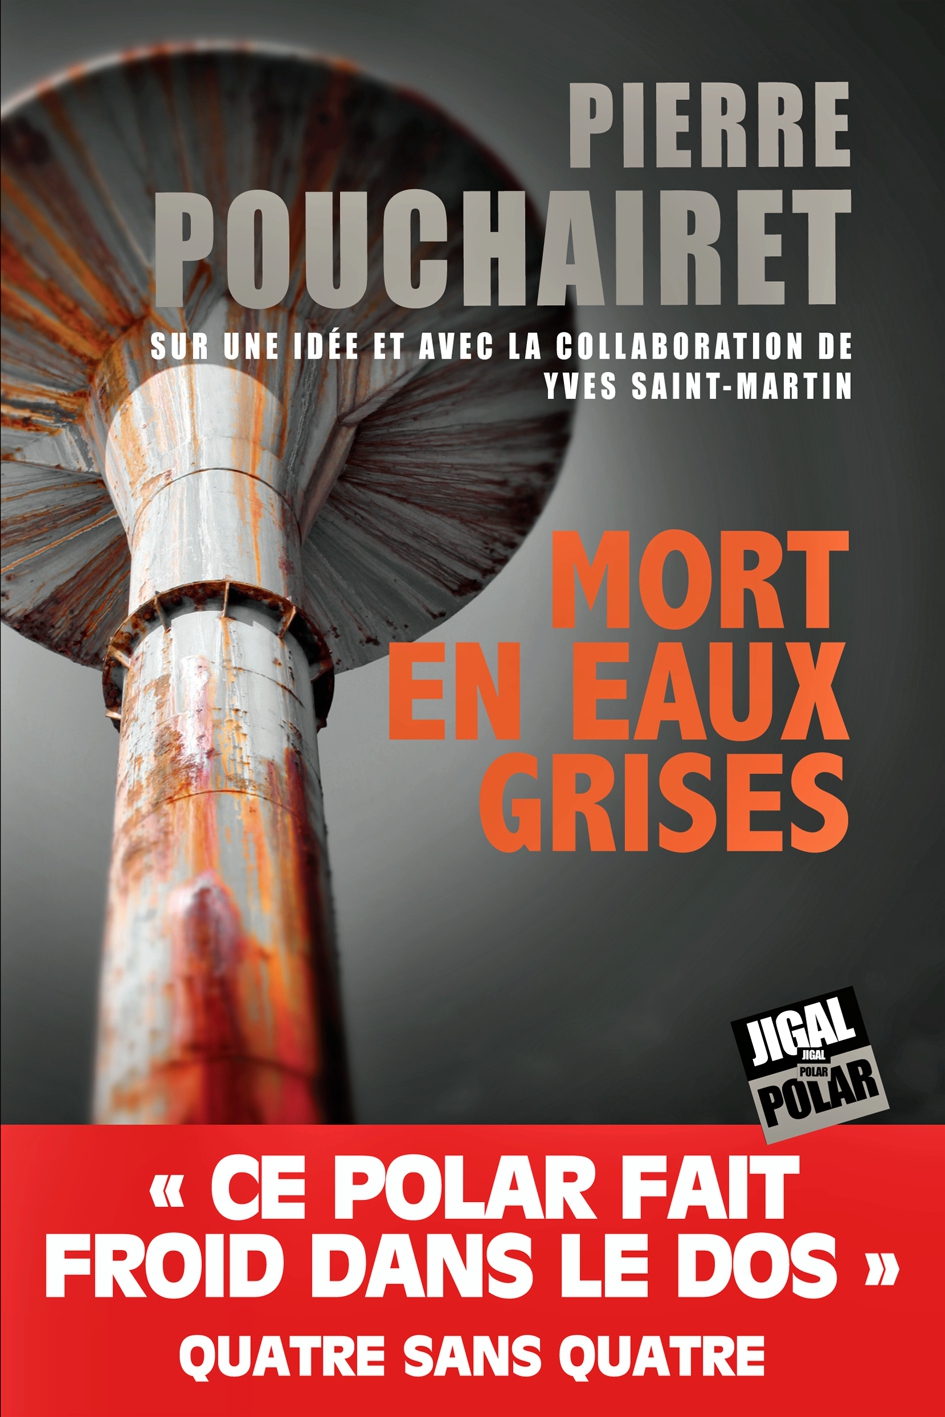 Mort en eaux grises, Pierre Pouchairet, Yves Saint-Martin, Jigal Polar